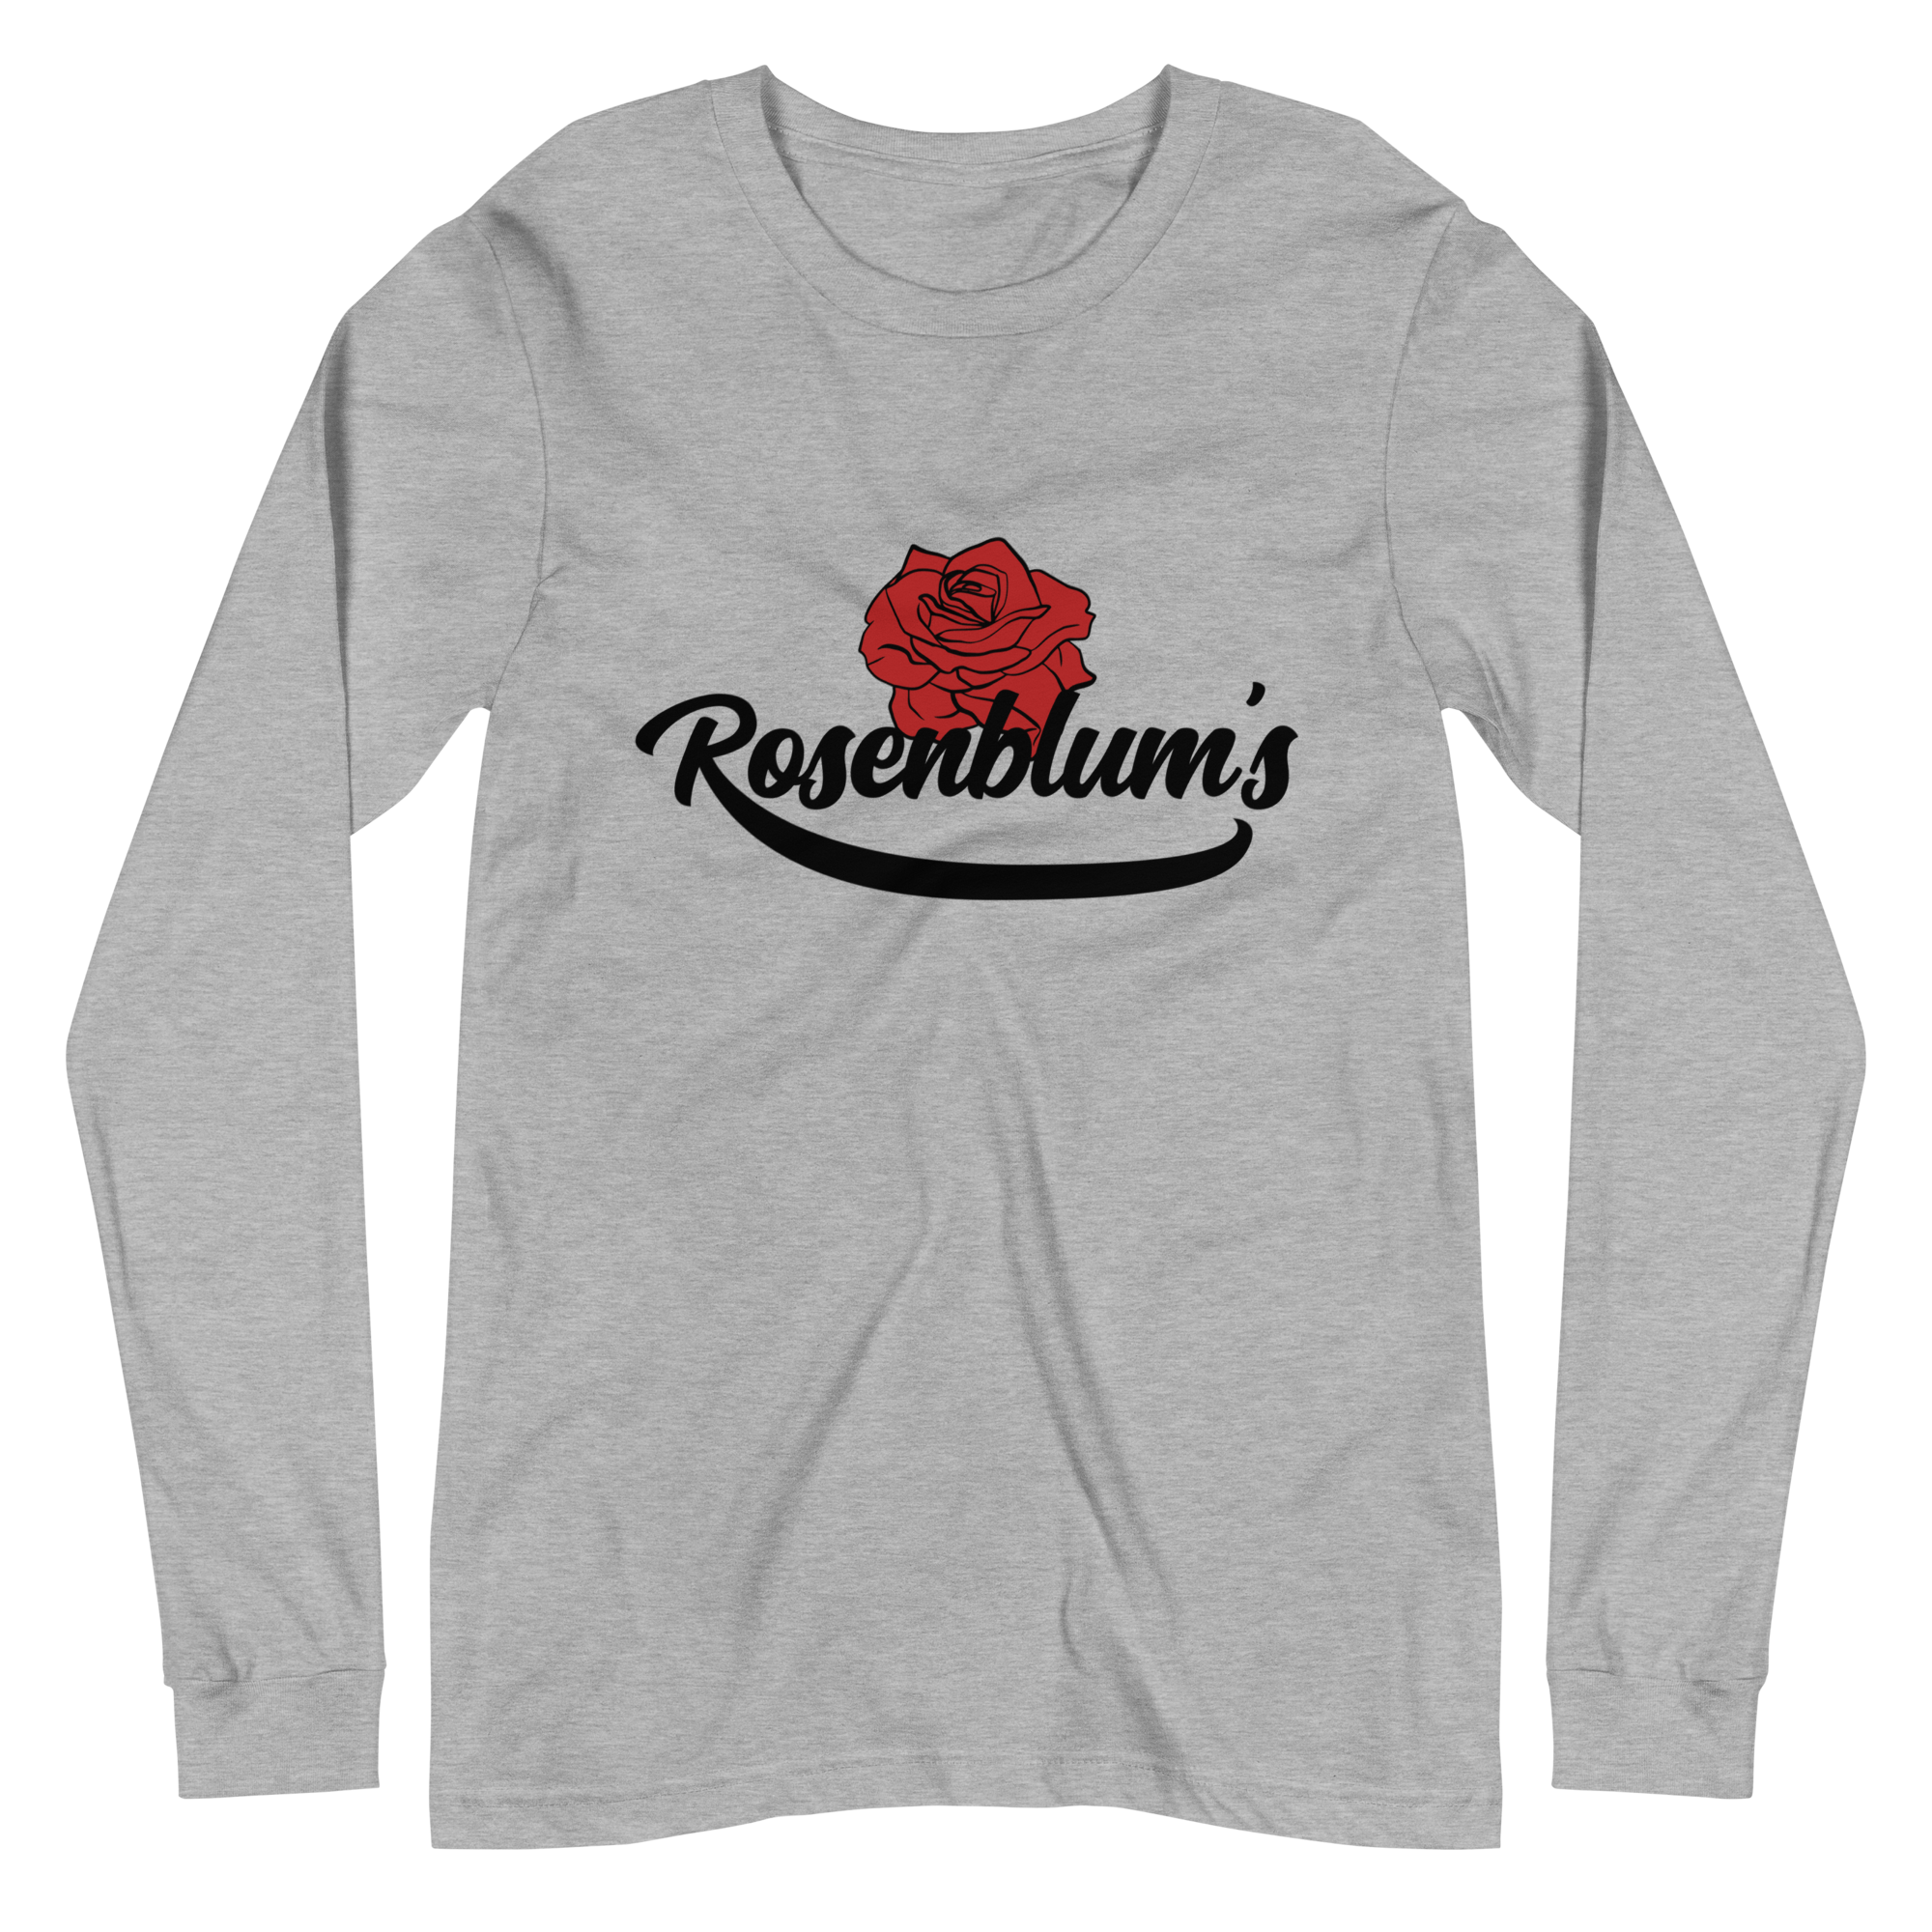 Cleveland Rosenblums Long-Sleeve T-Shirt